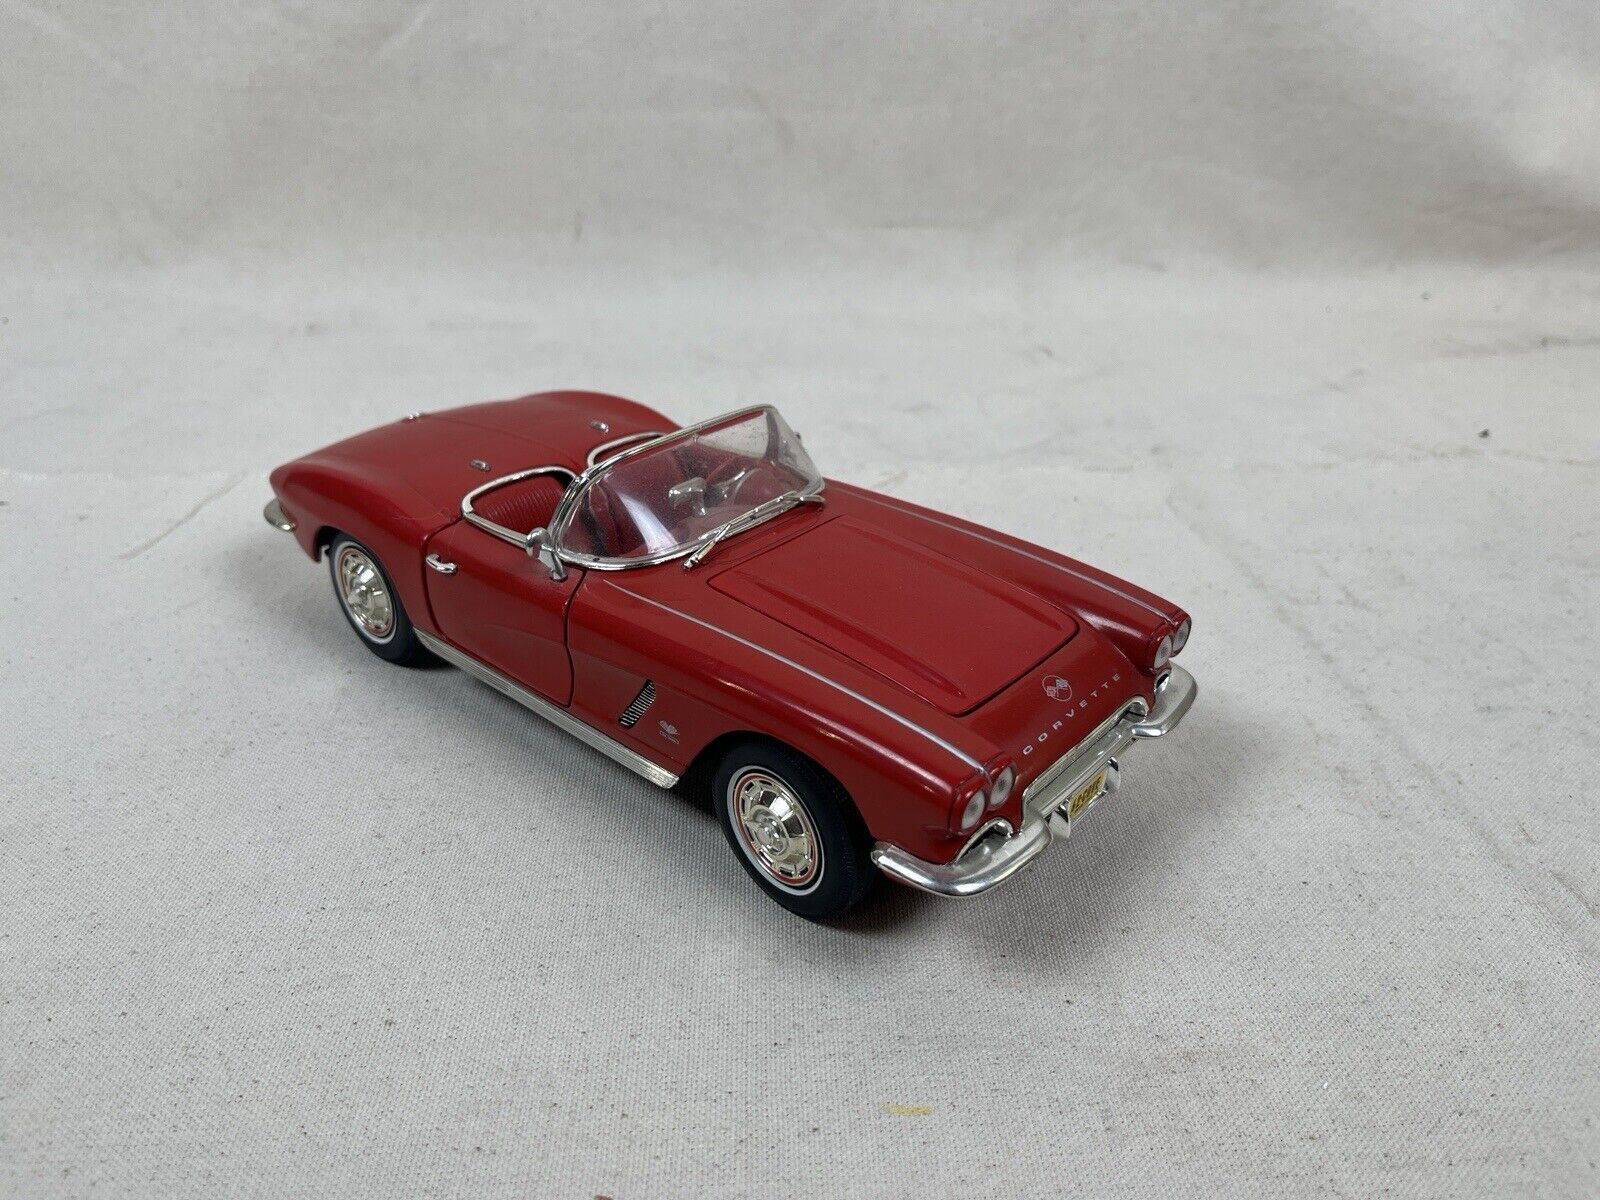 Ertl 1962 Chevrolet Corvette Cherry Red 1:18 Scale No Box